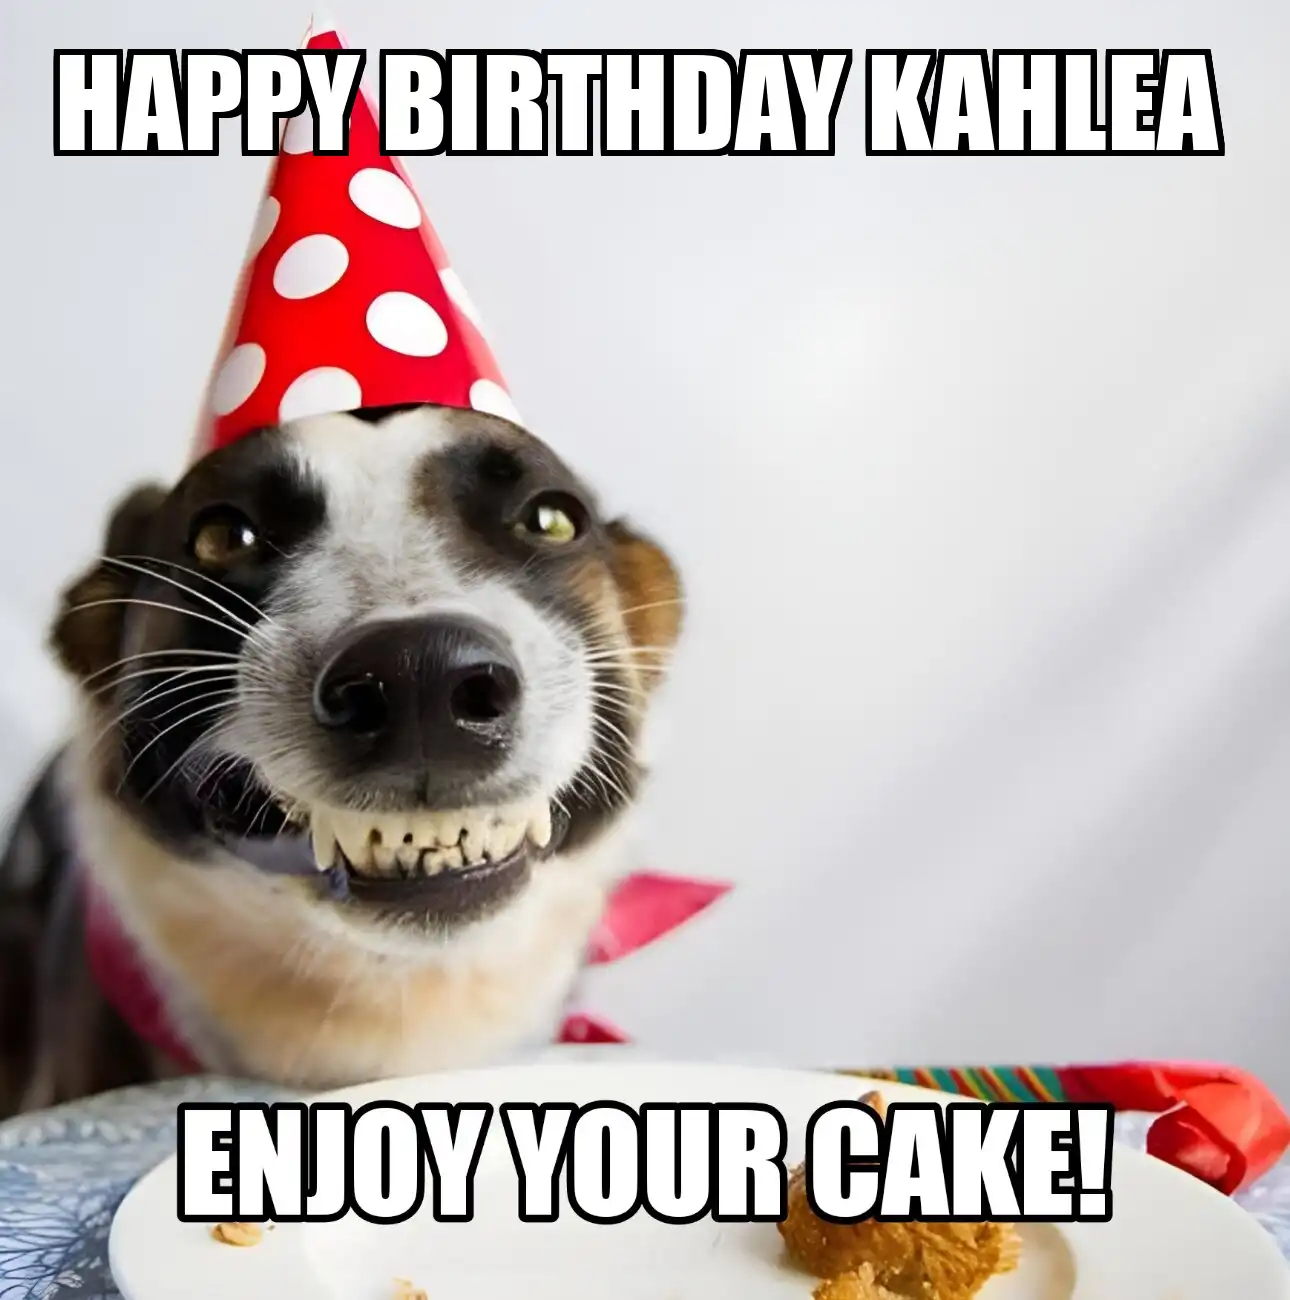 Happy Birthday Kahlea Enjoy Your Cake Dog Meme